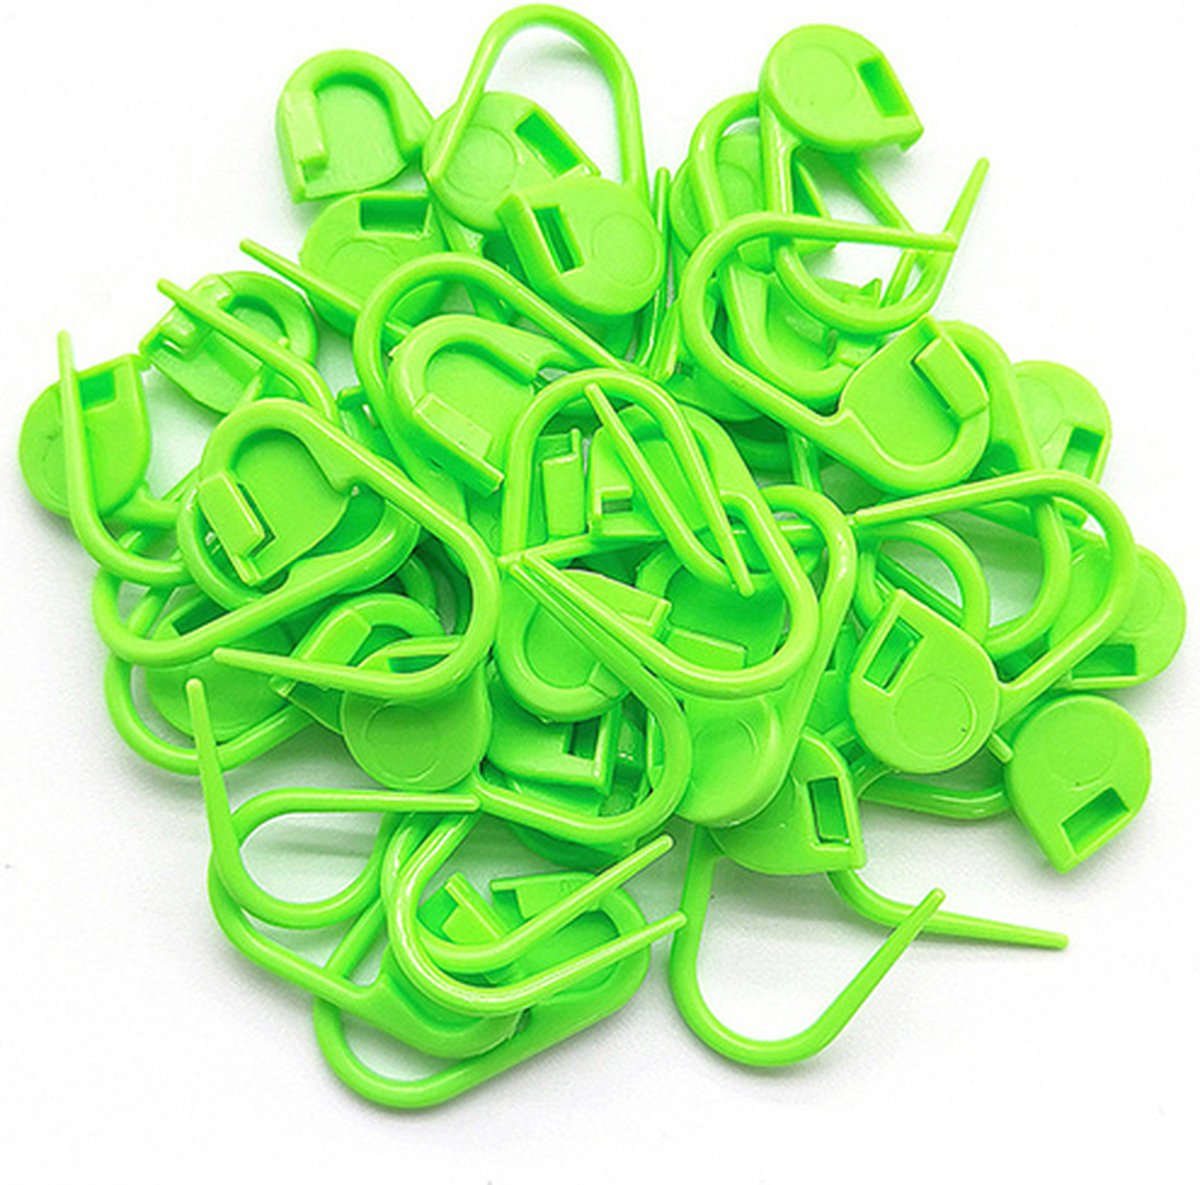 Plastic veiligheidsspelden - 50 stuks - veiligheidsspelden klein - Fluoriserend groen